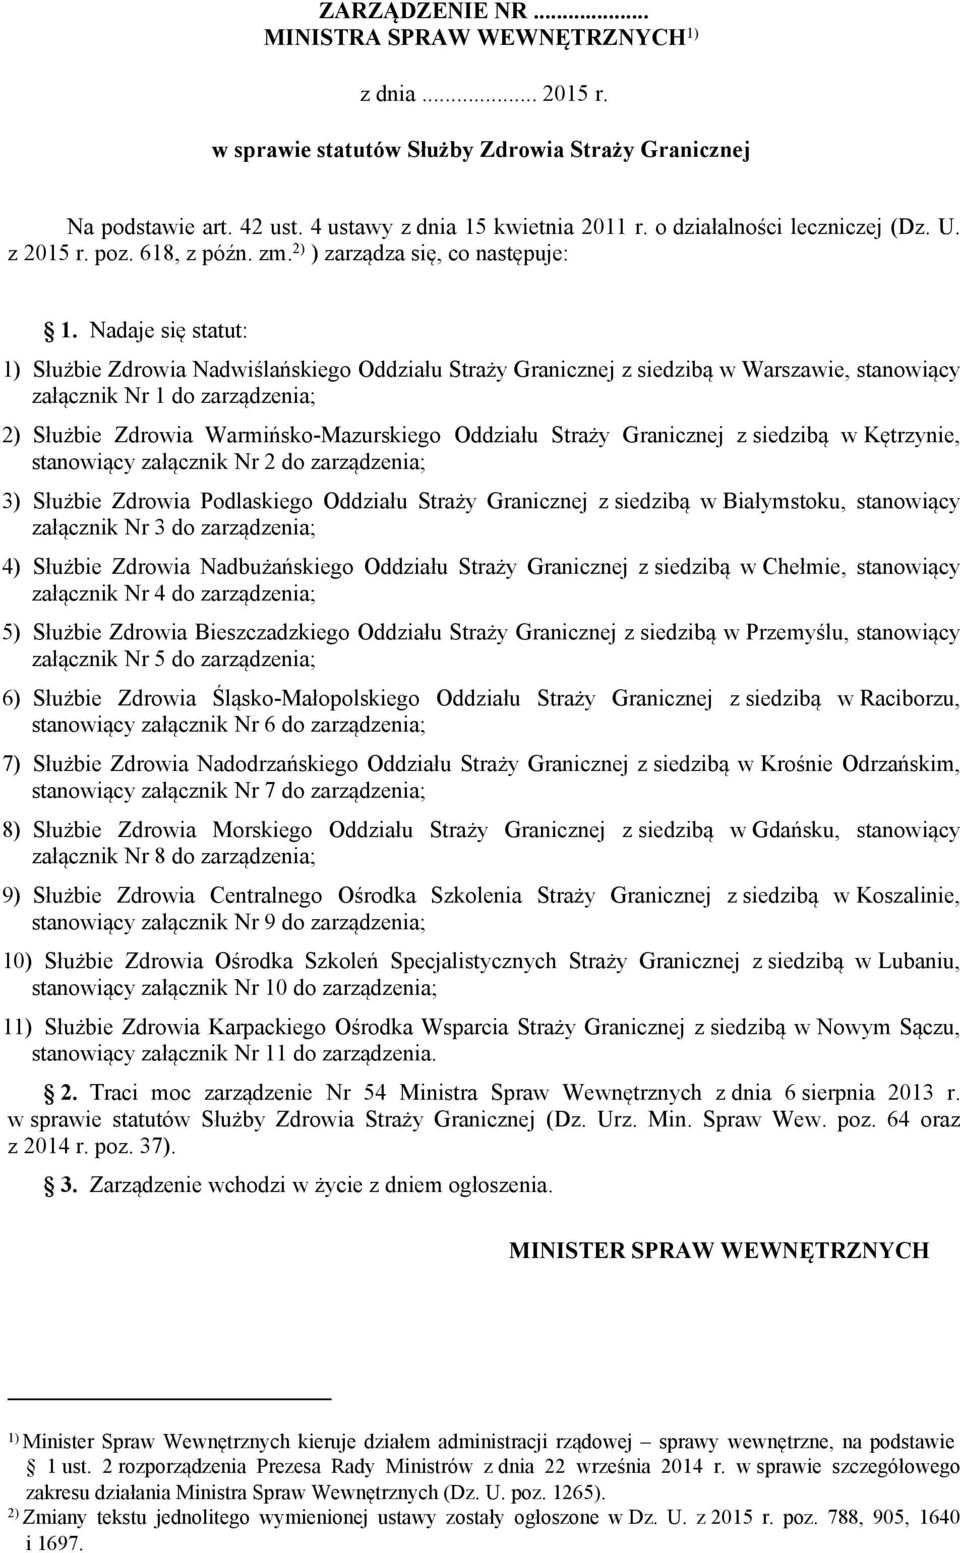 Nadaje się statut: 1) Służbie Zdrowia Nadwiślańskiego Oddziału Straży Granicznej z siedzibą w Warszawie, stanowiący załącznik Nr 1 do zarządzenia; 2) Służbie Zdrowia Warmińsko-Mazurskiego Oddziału